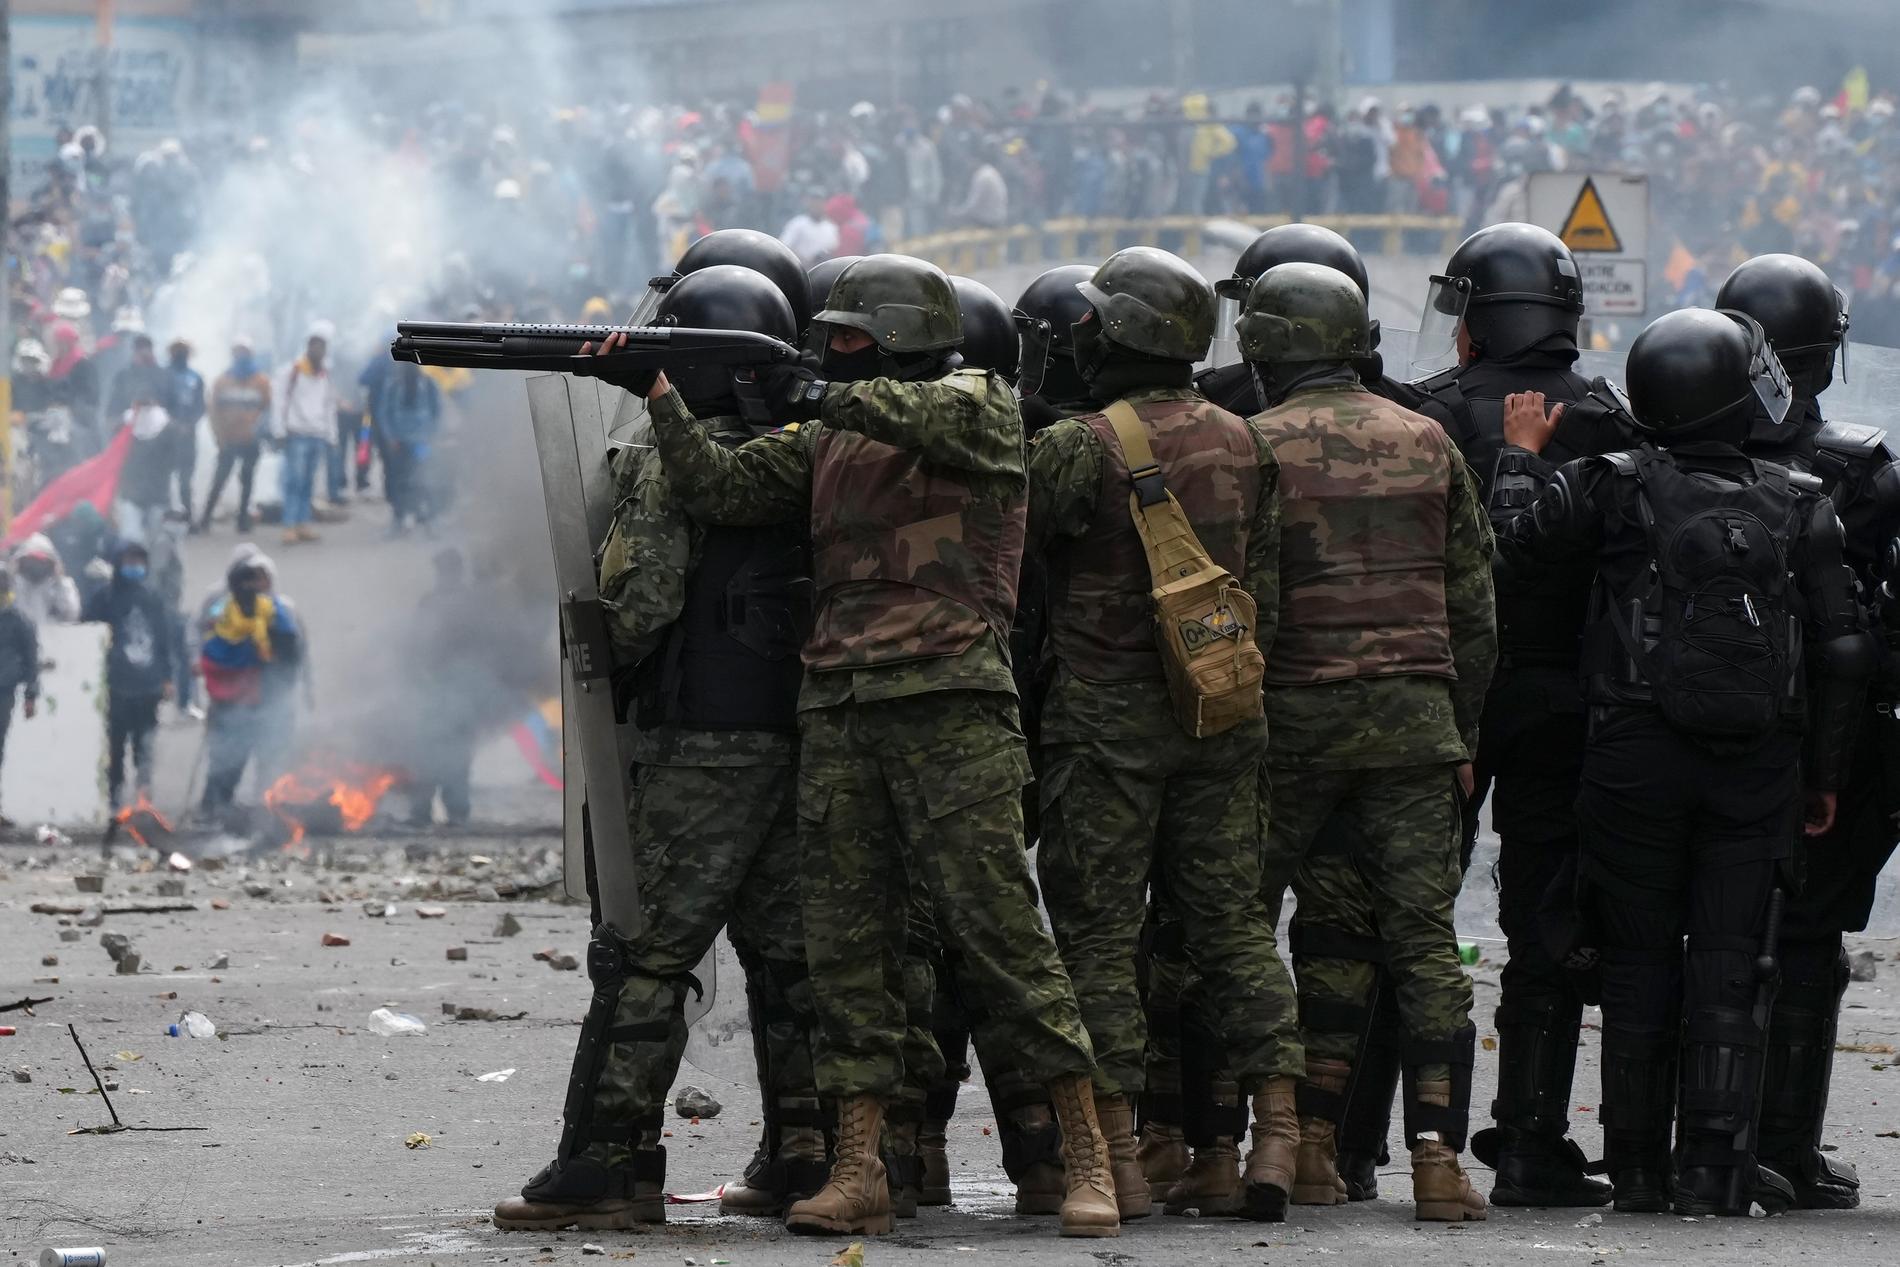 Riksrättsomröstningen kom efter flera veckors allt mer våldsamma protester mot höga levnadskostnader. Bild från huvudstaden Quito, 21 juni.